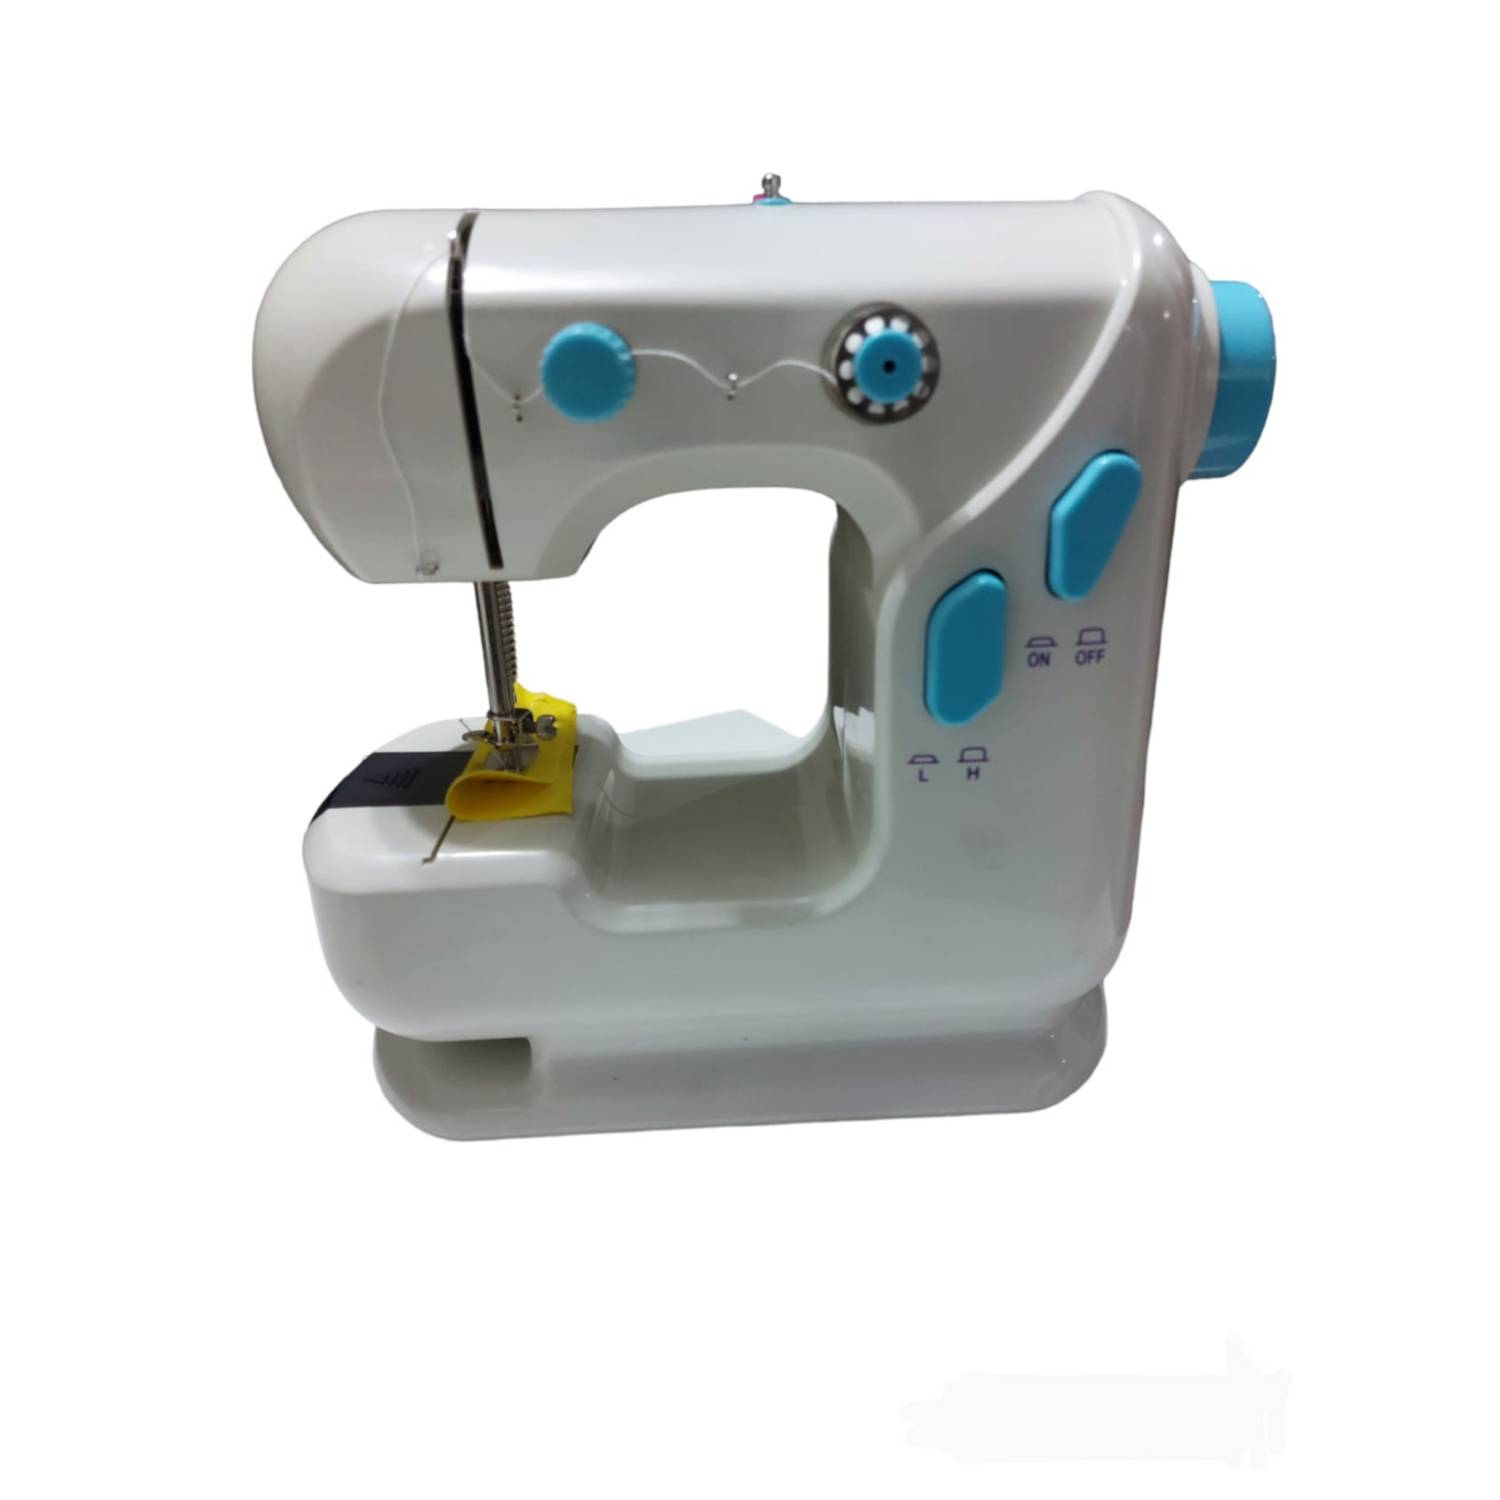 Pedal maquina de coser Alfa Next 20